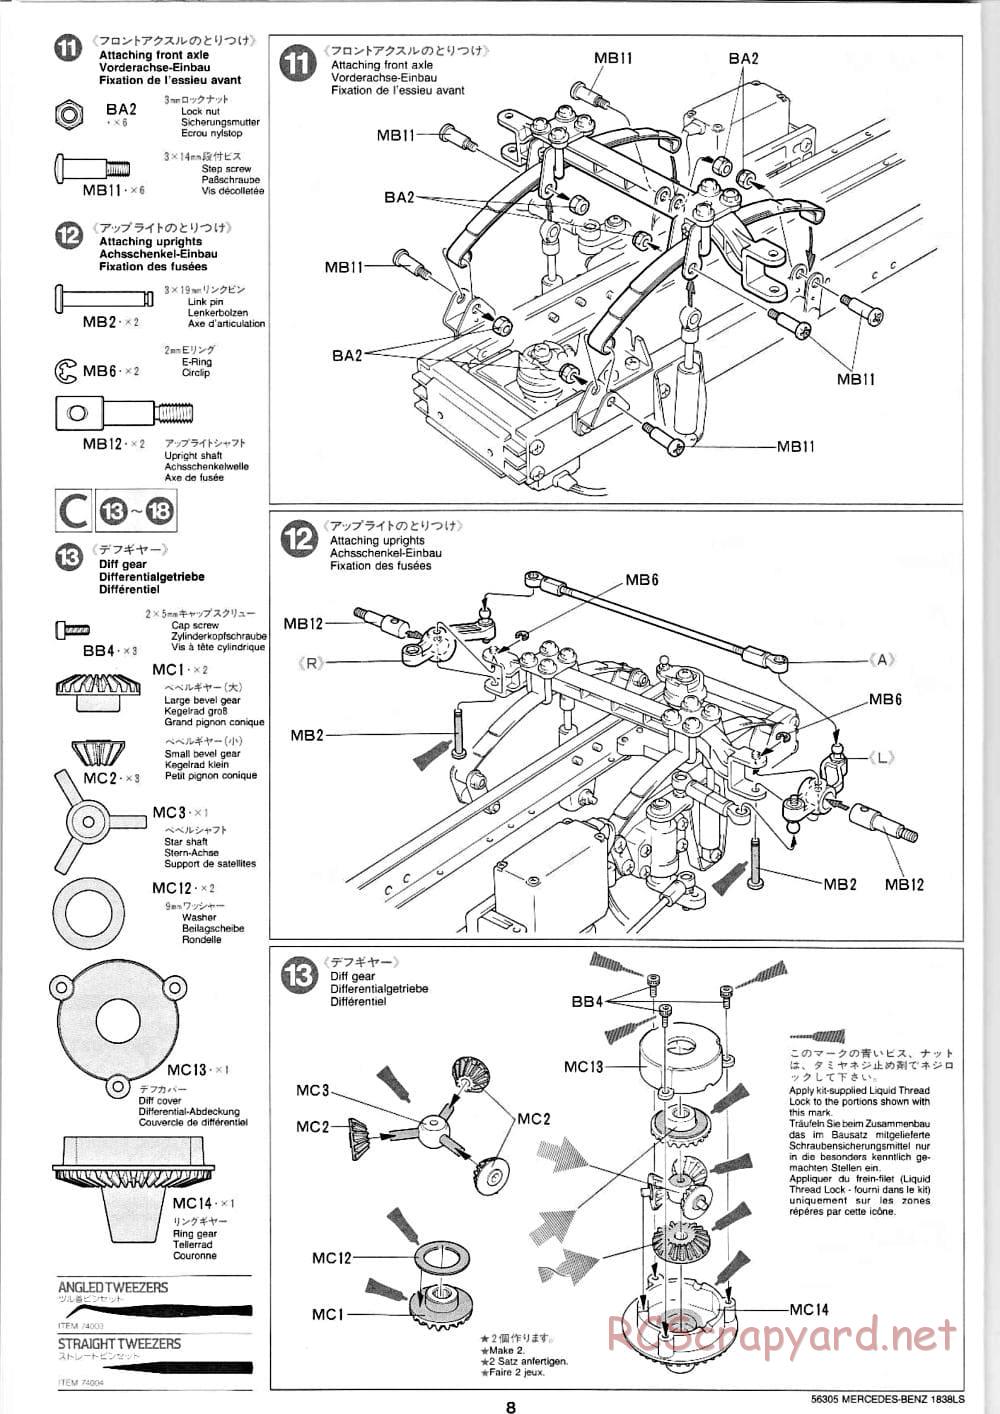 Tamiya - Mercedes-Benz 1838LS - Manual - Page 8